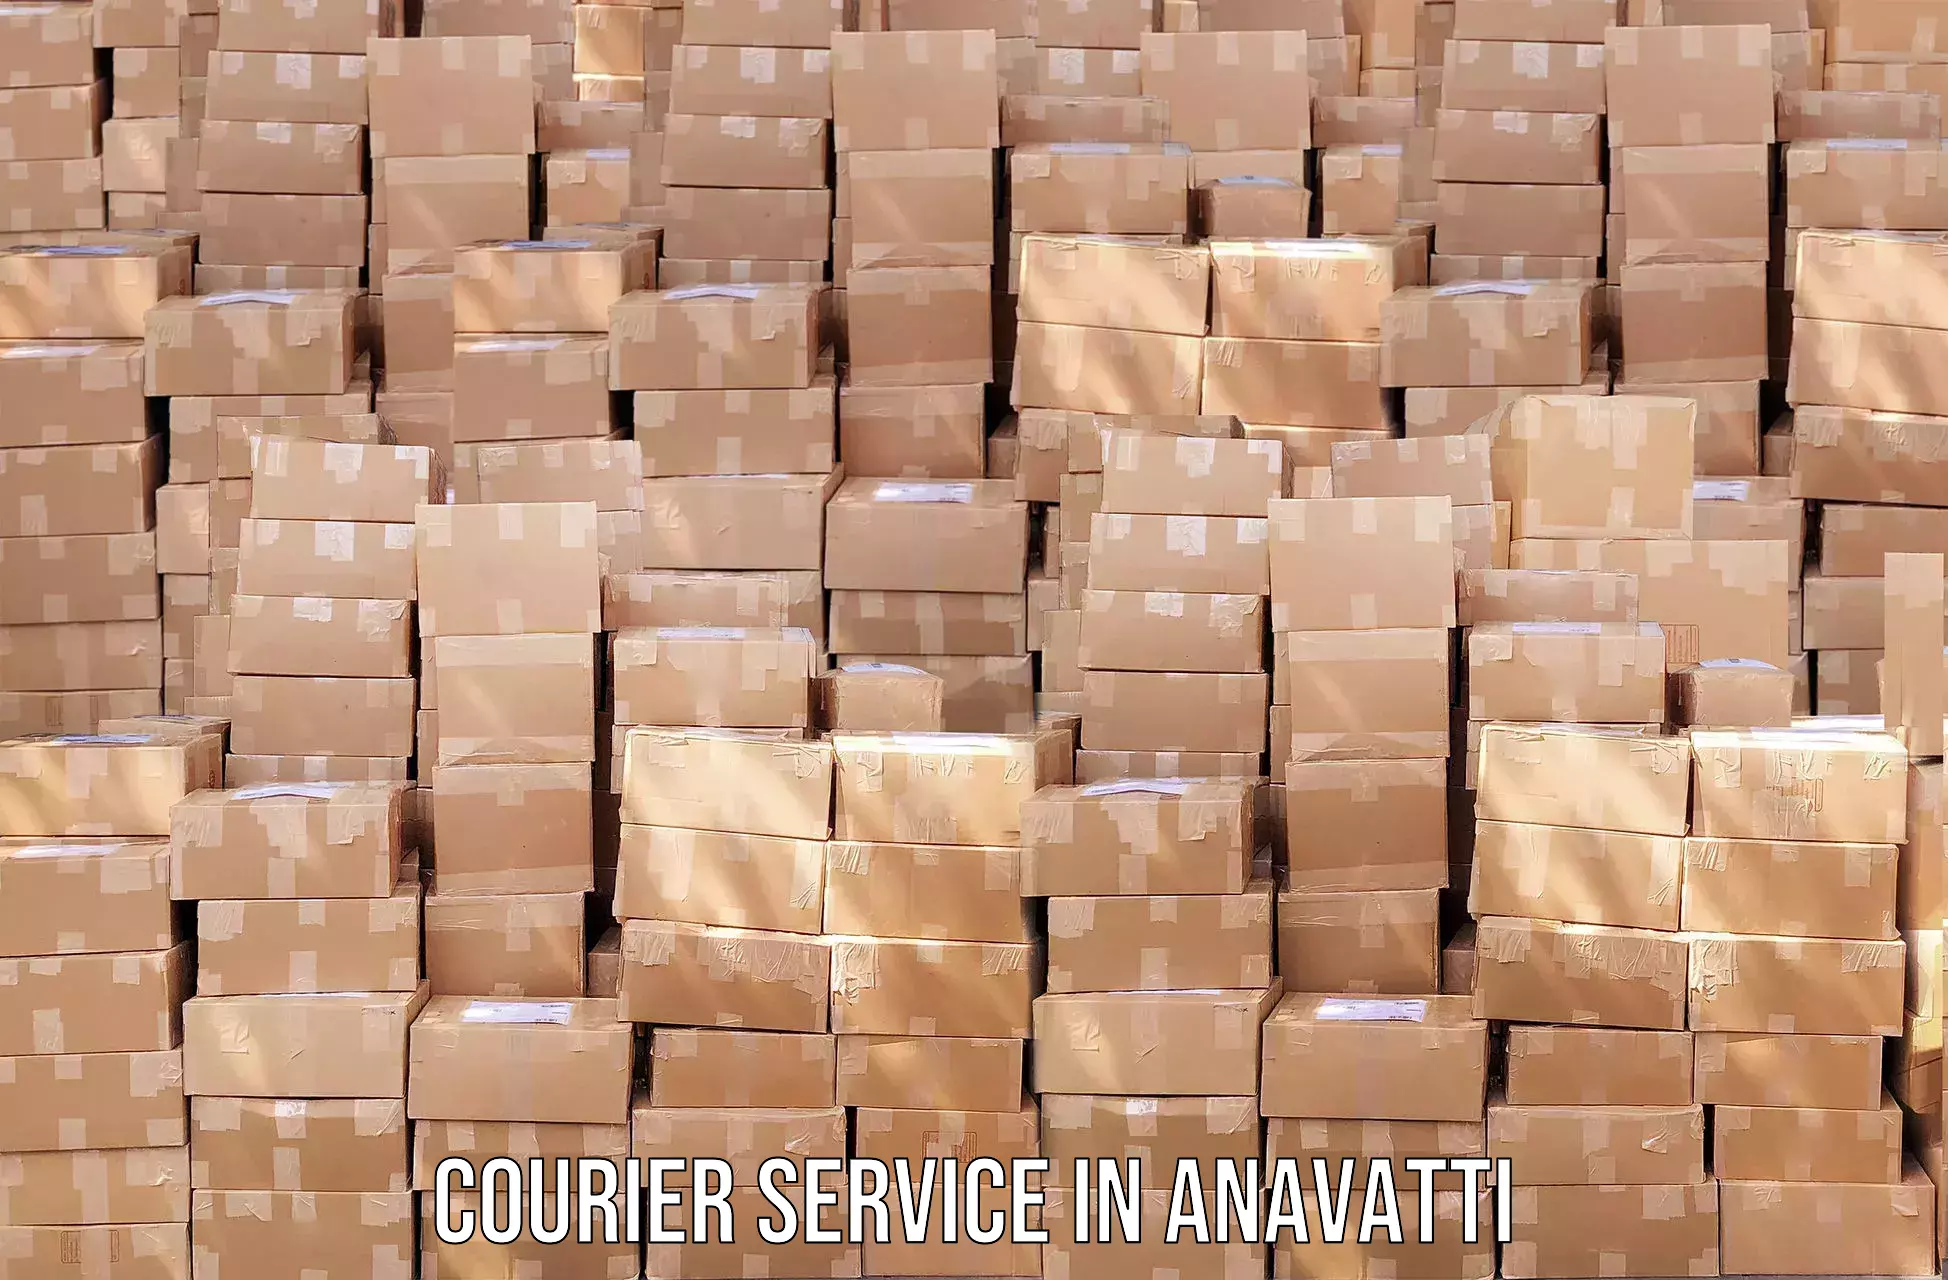 Efficient logistics management in Anavatti